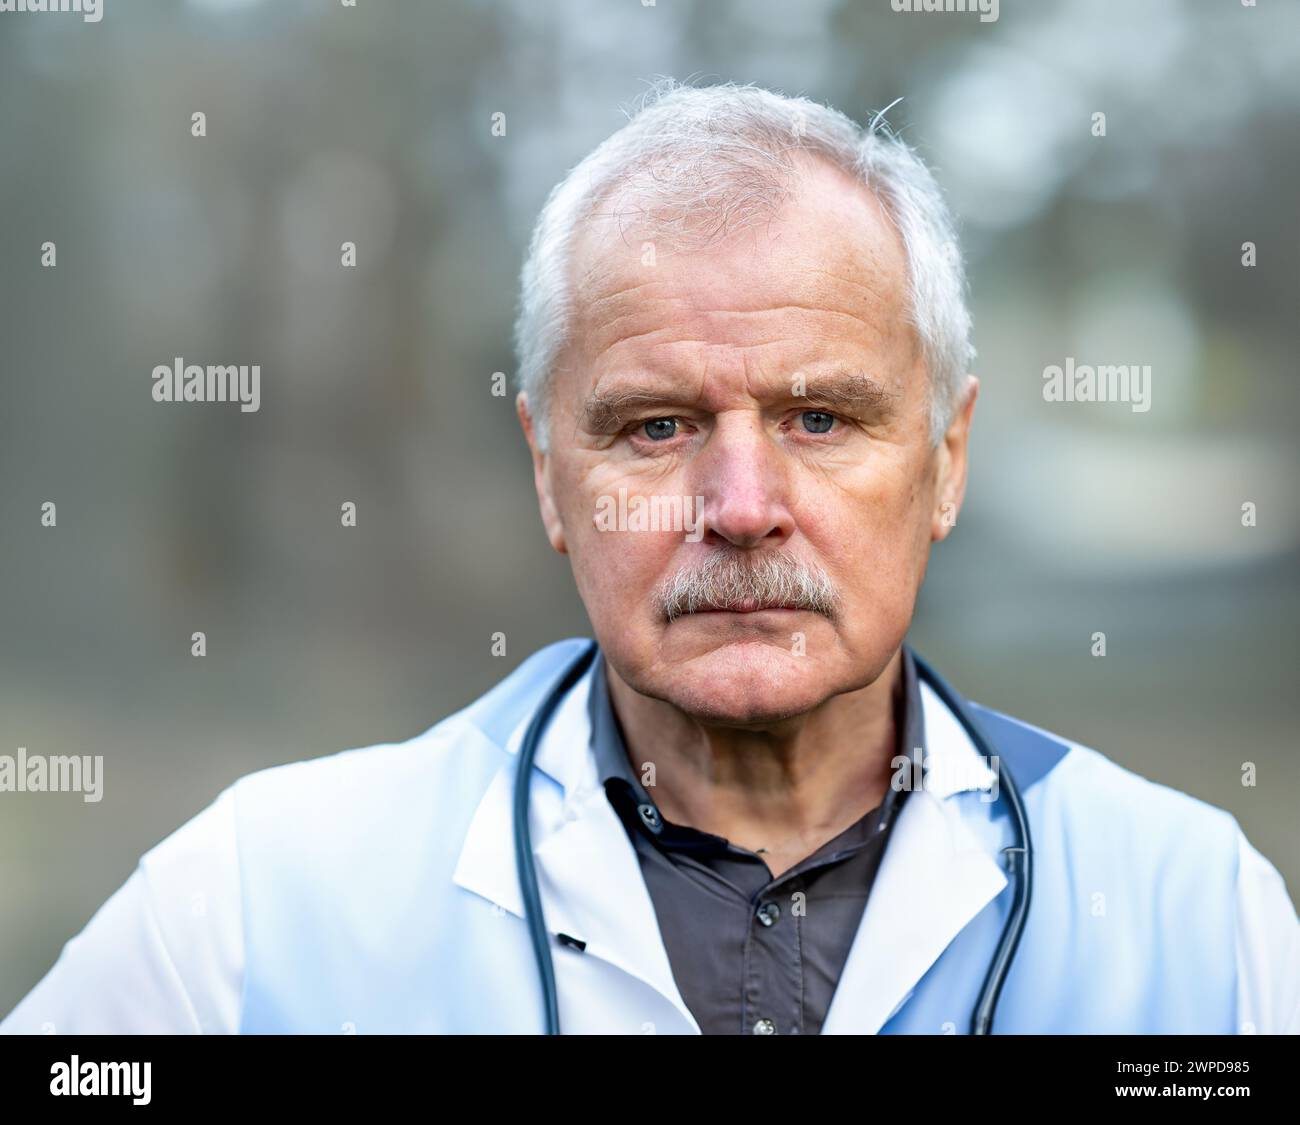 Ritratto di un medico anziano che guarda seriamente nella fotocamera. Foto Stock